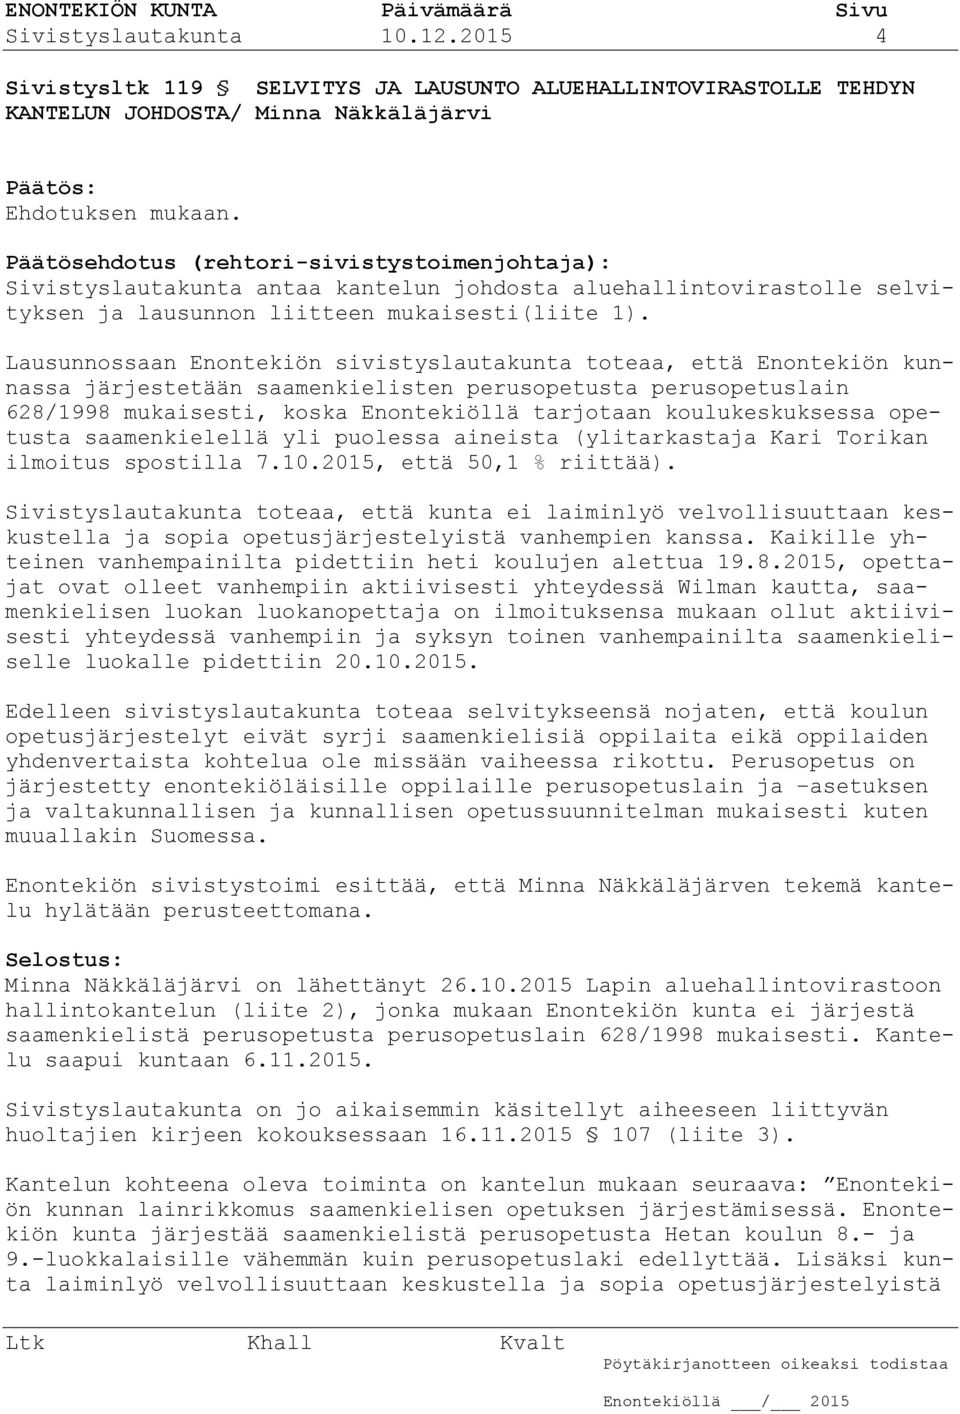 Lausunnossaan Enontekiön sivistyslautakunta toteaa, että Enontekiön kunnassa järjestetään saamenkielisten perusopetusta perusopetuslain 628/1998 mukaisesti, koska Enontekiöllä tarjotaan